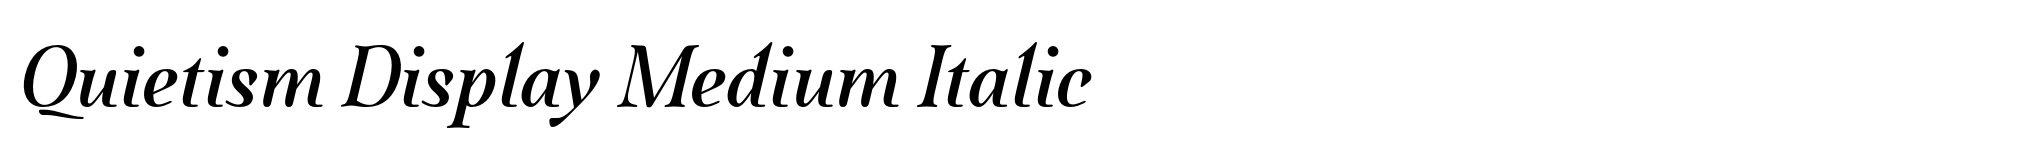 Quietism Display Medium Italic image